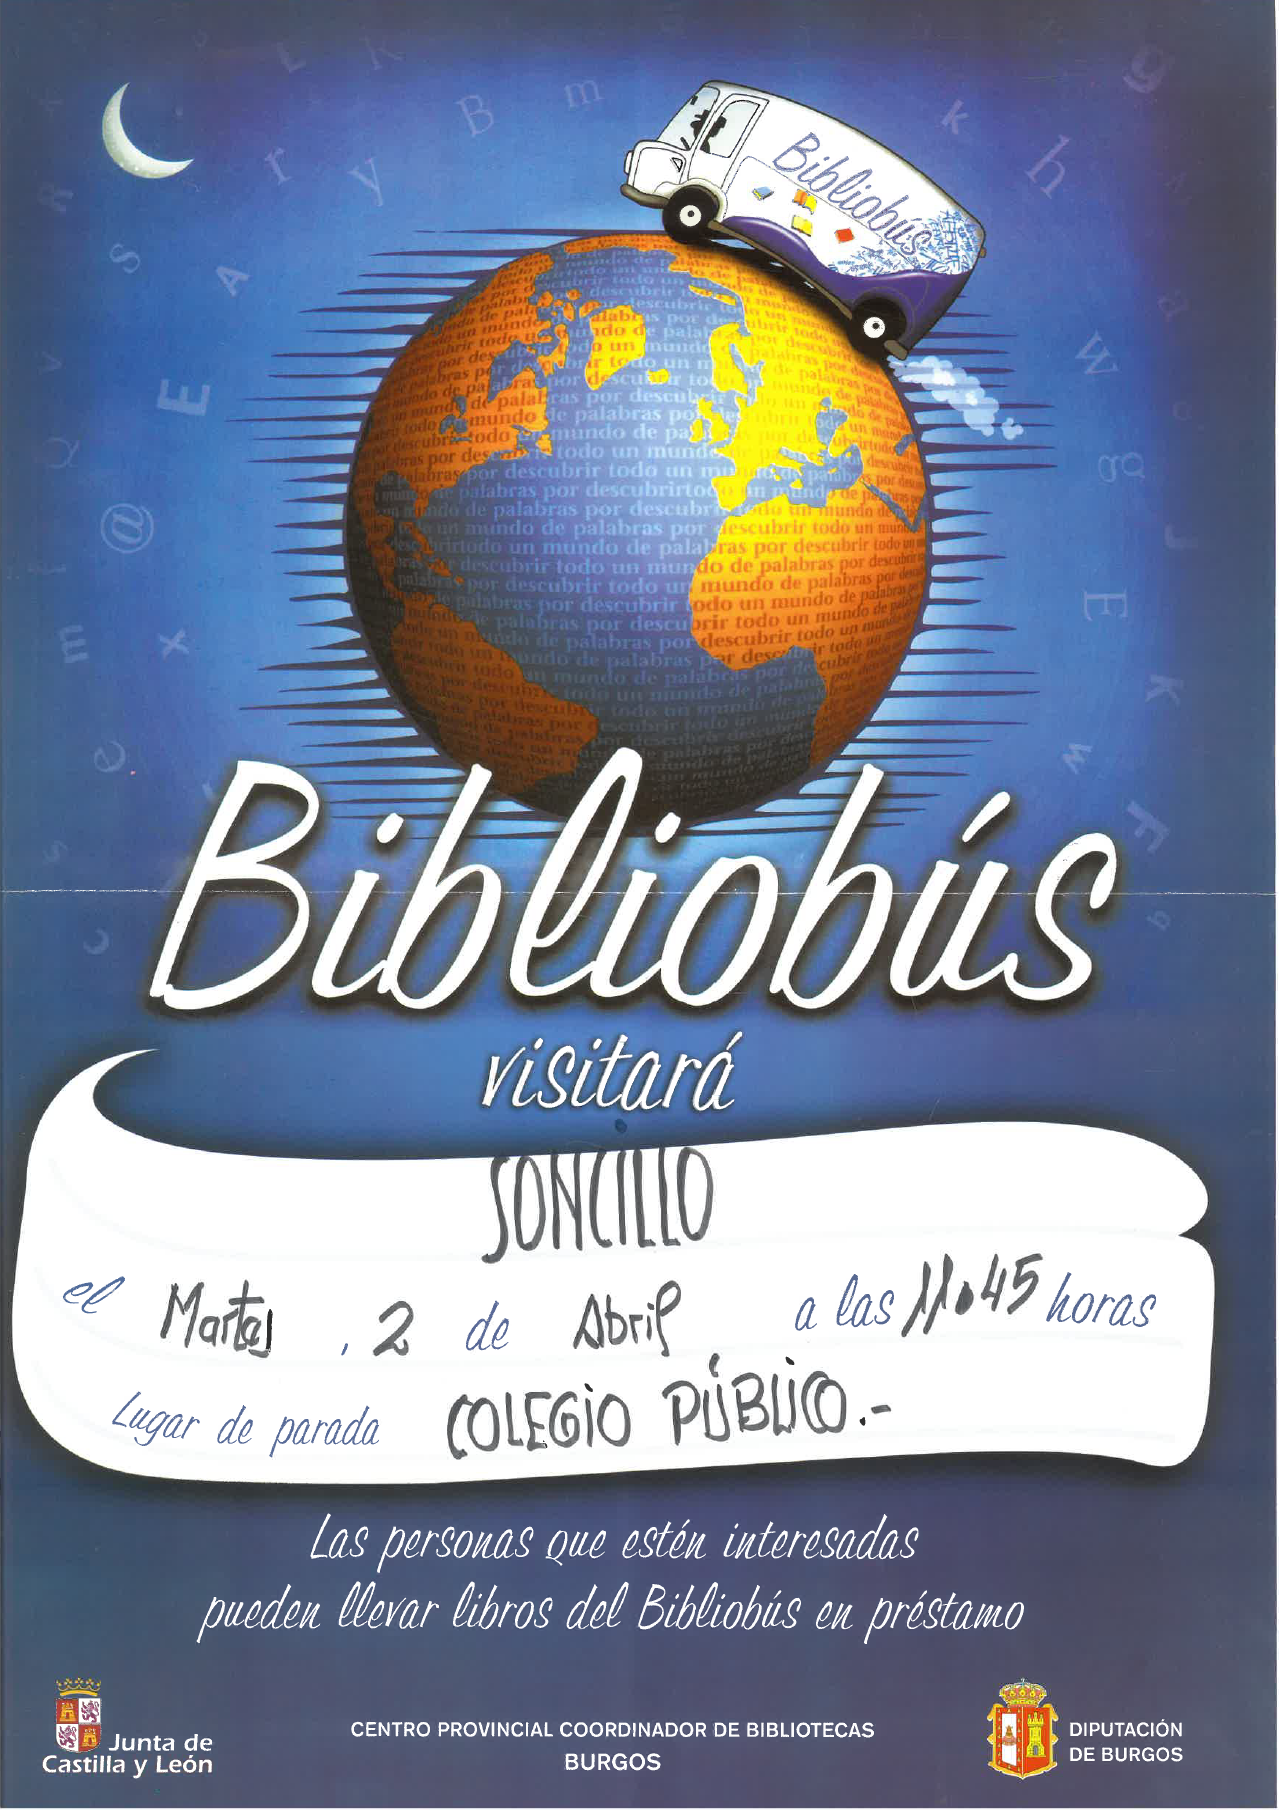 "BIBLIOBUS 2 DE ABRIL"